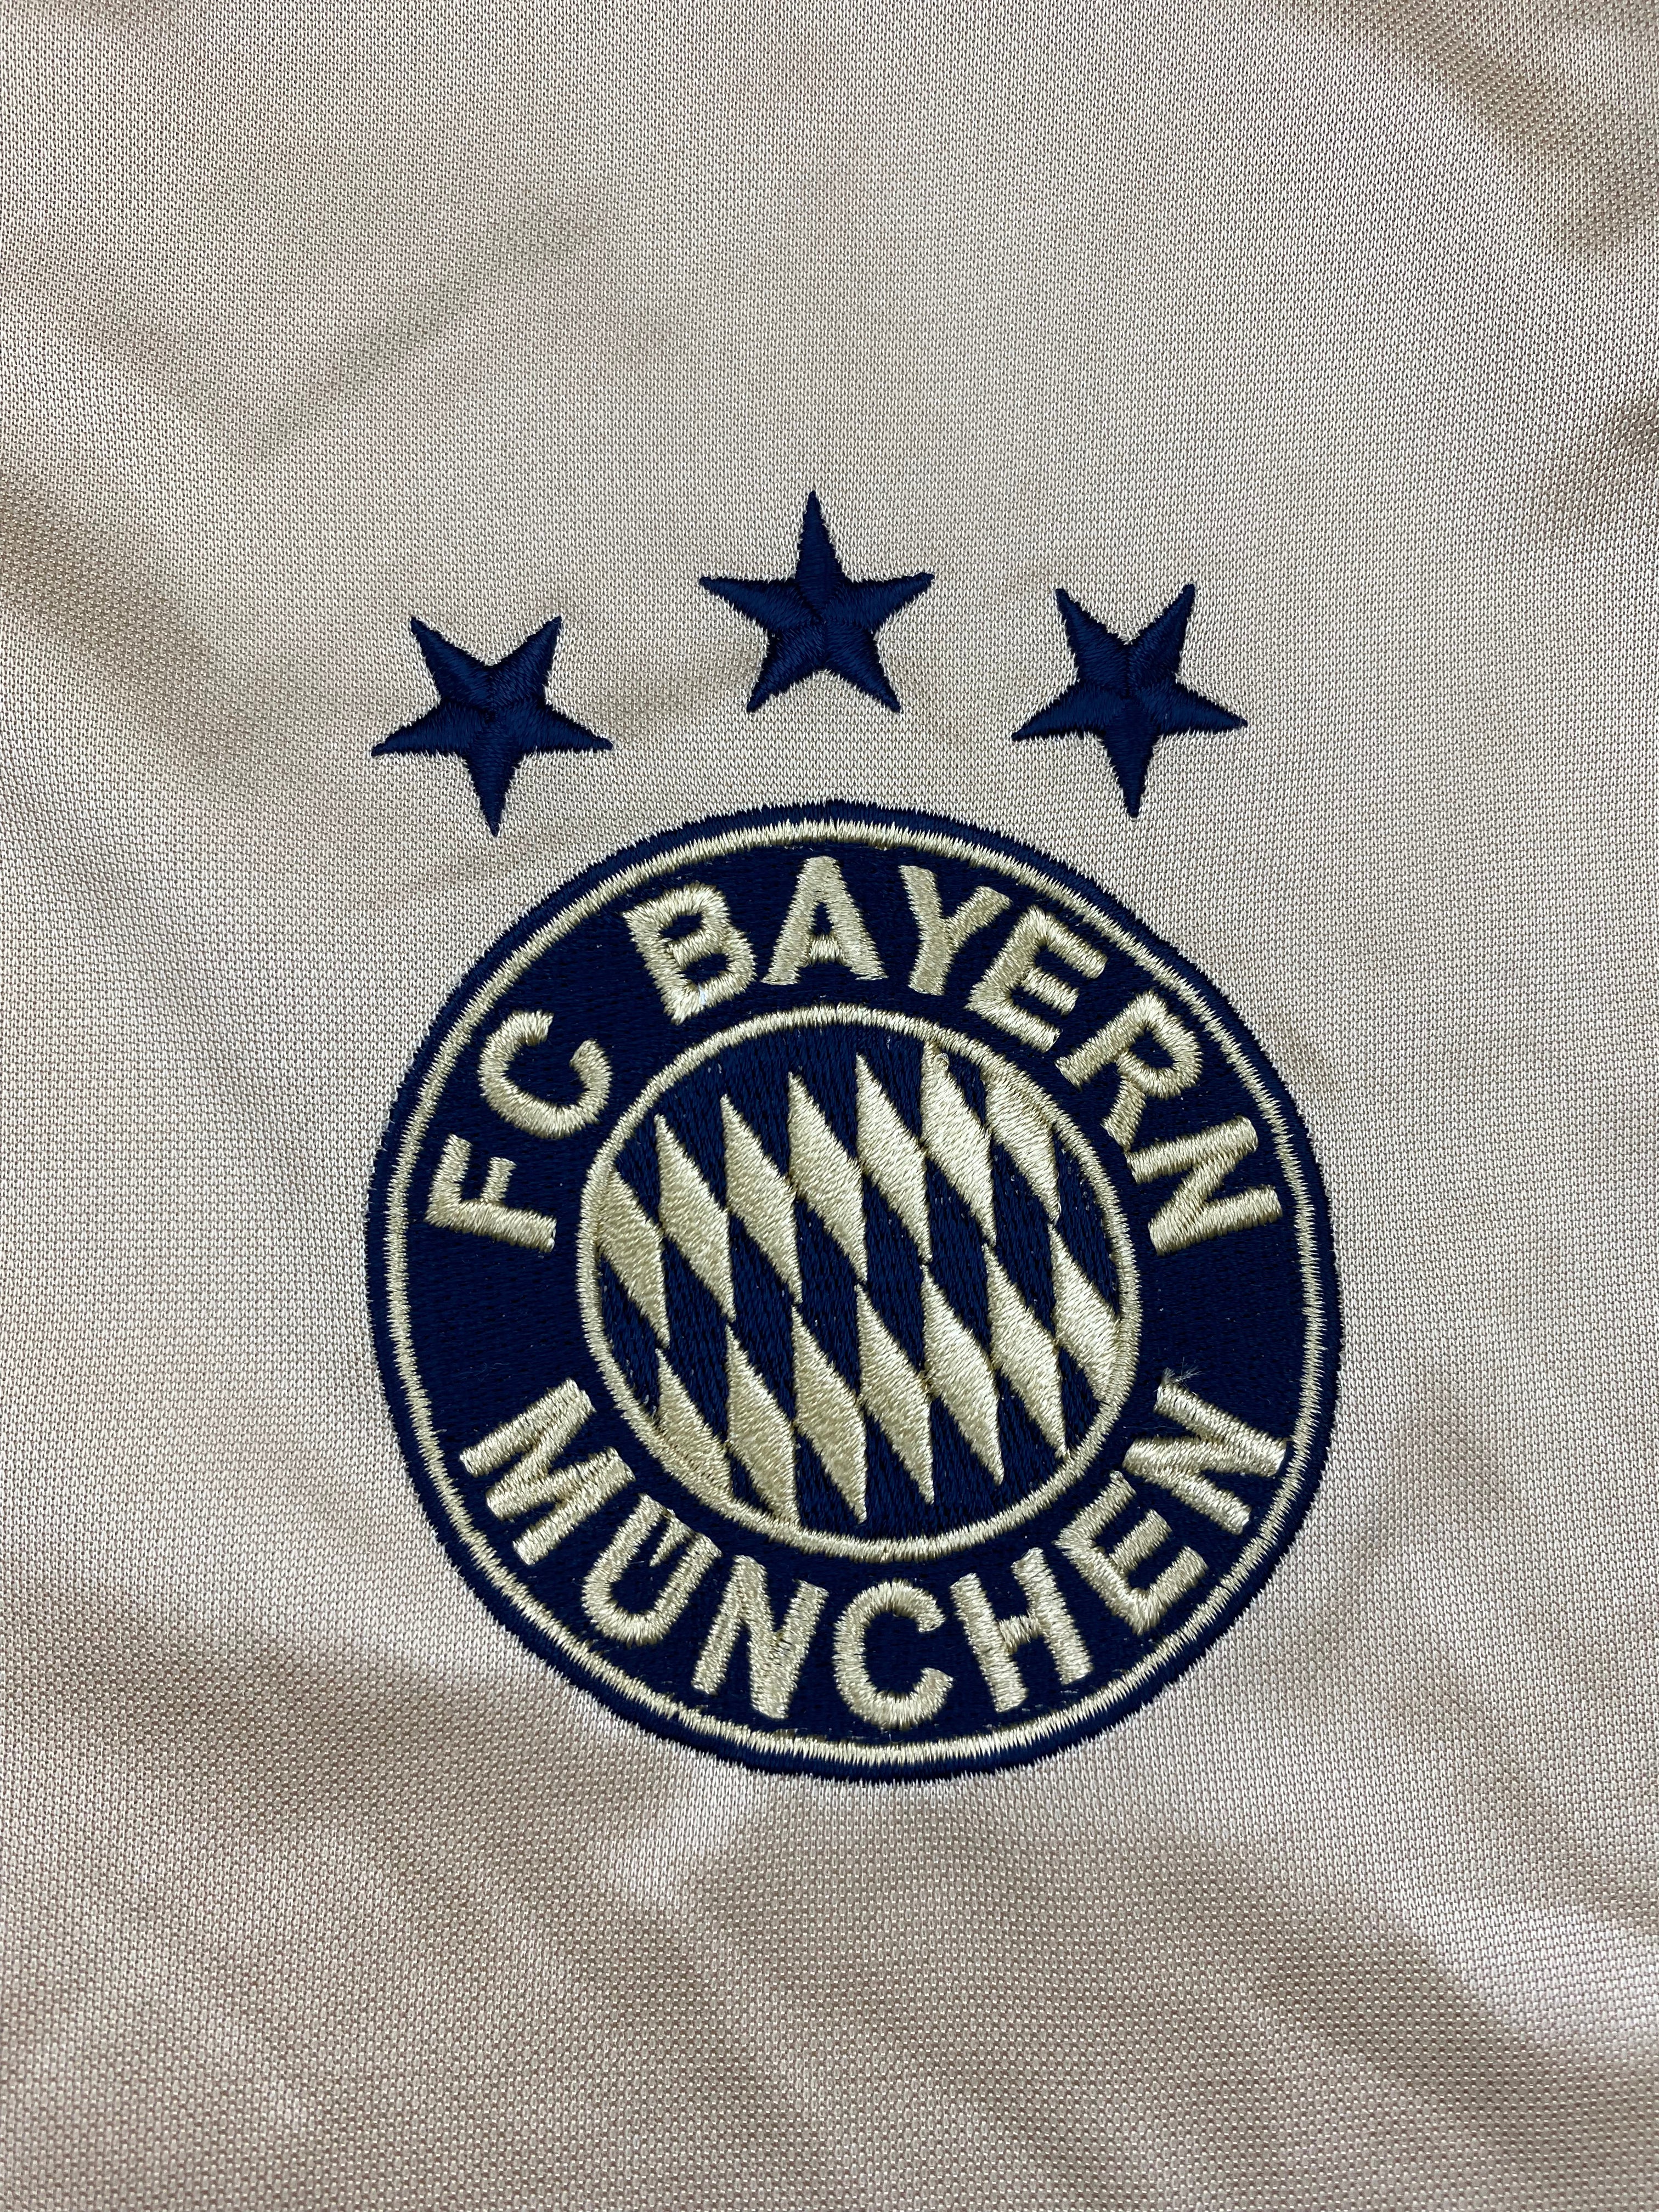 Maillot extérieur du Bayern Munich 2004/05 (M) 9/10 